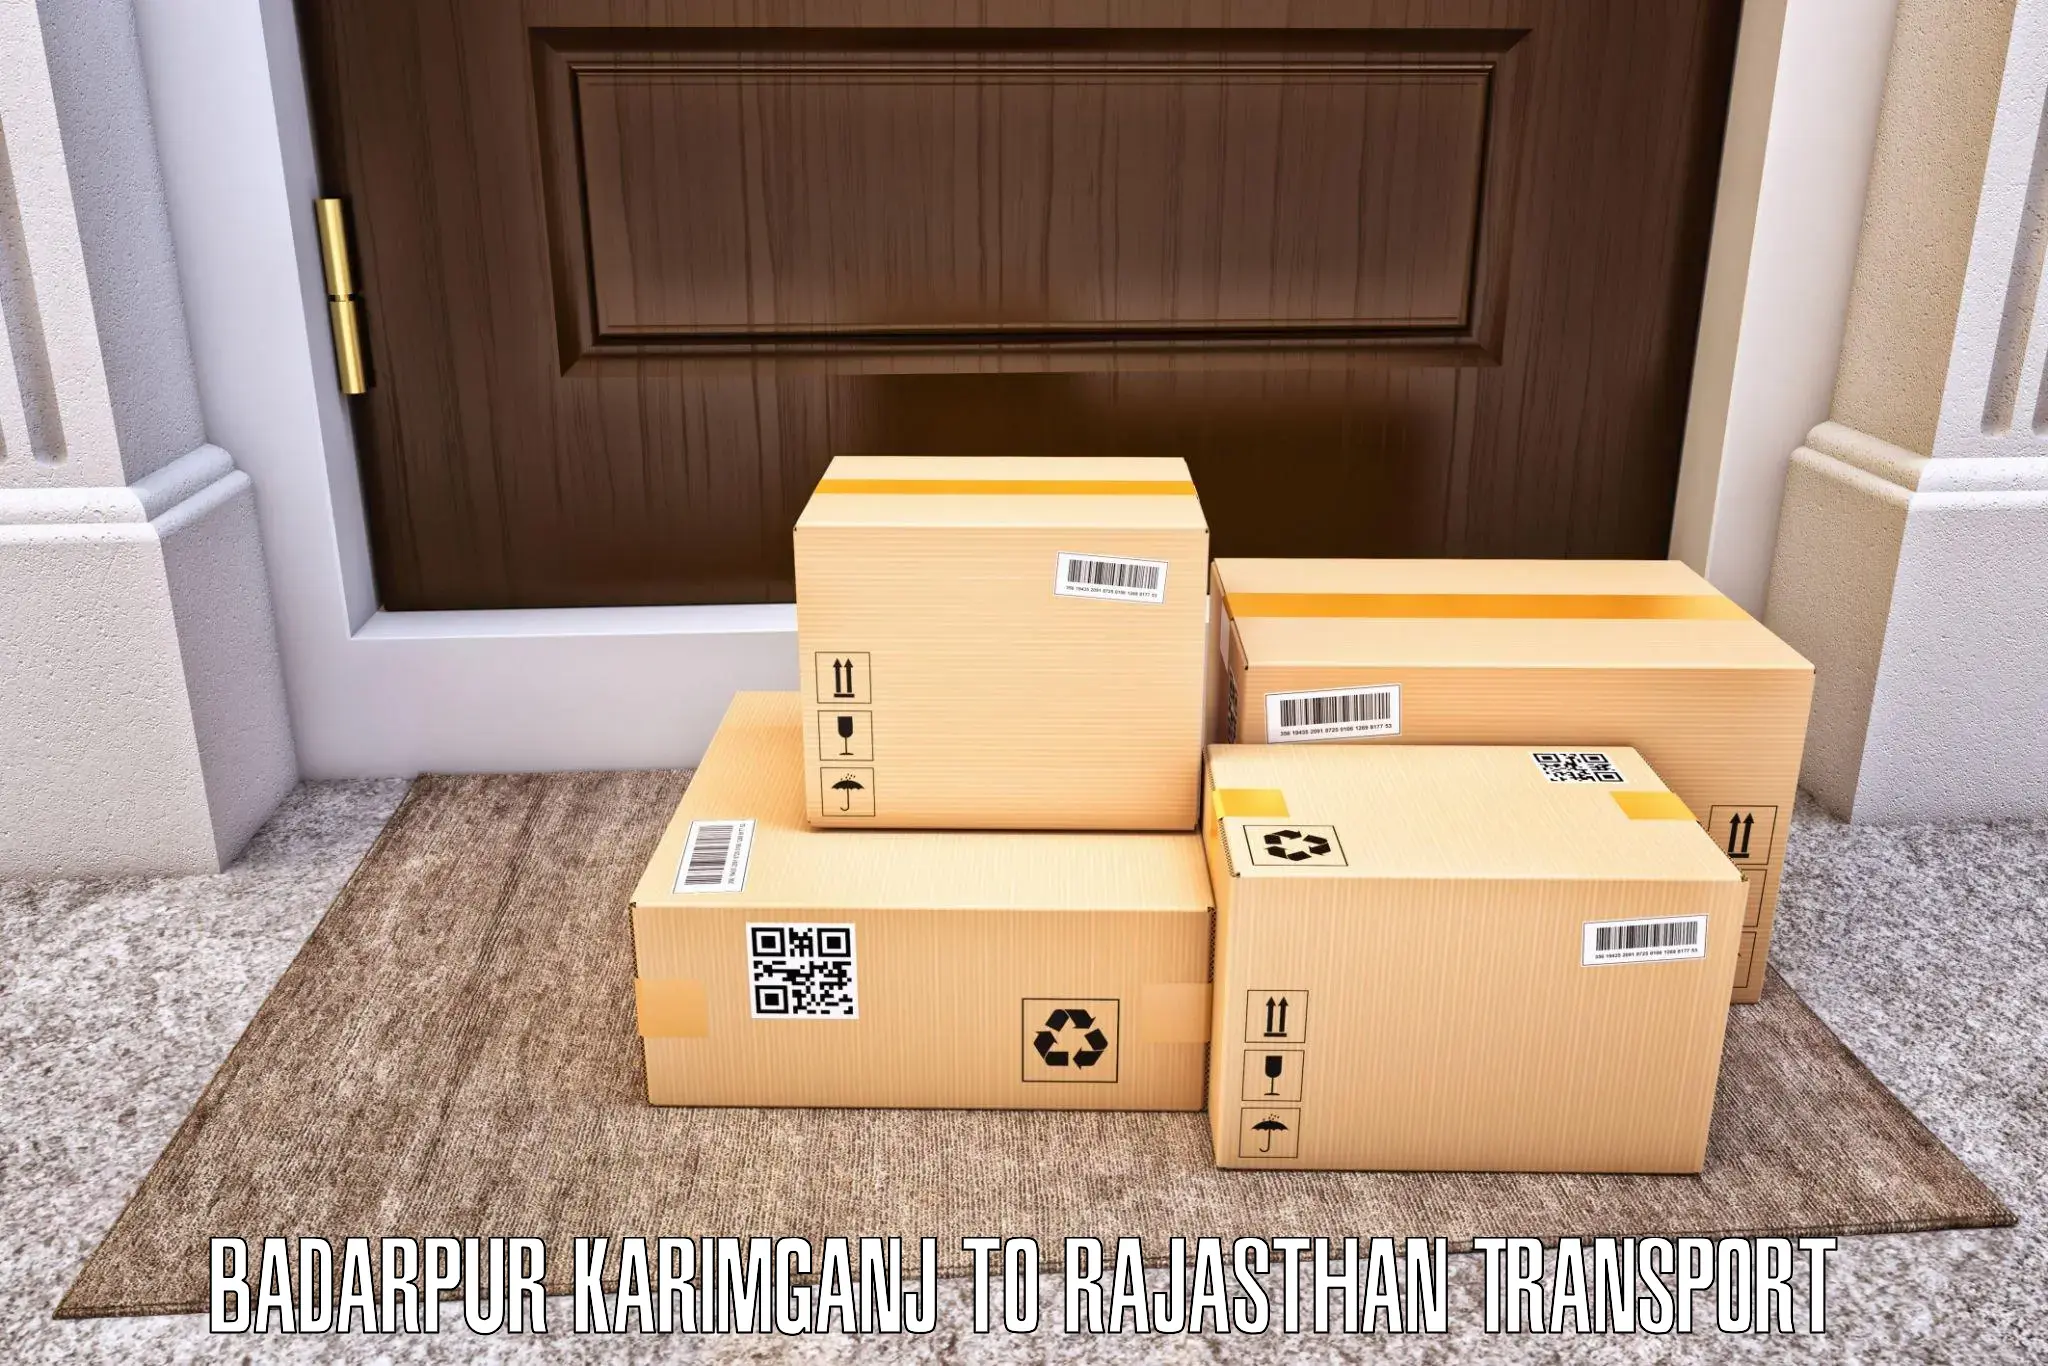 Furniture transport service in Badarpur Karimganj to Khinwara